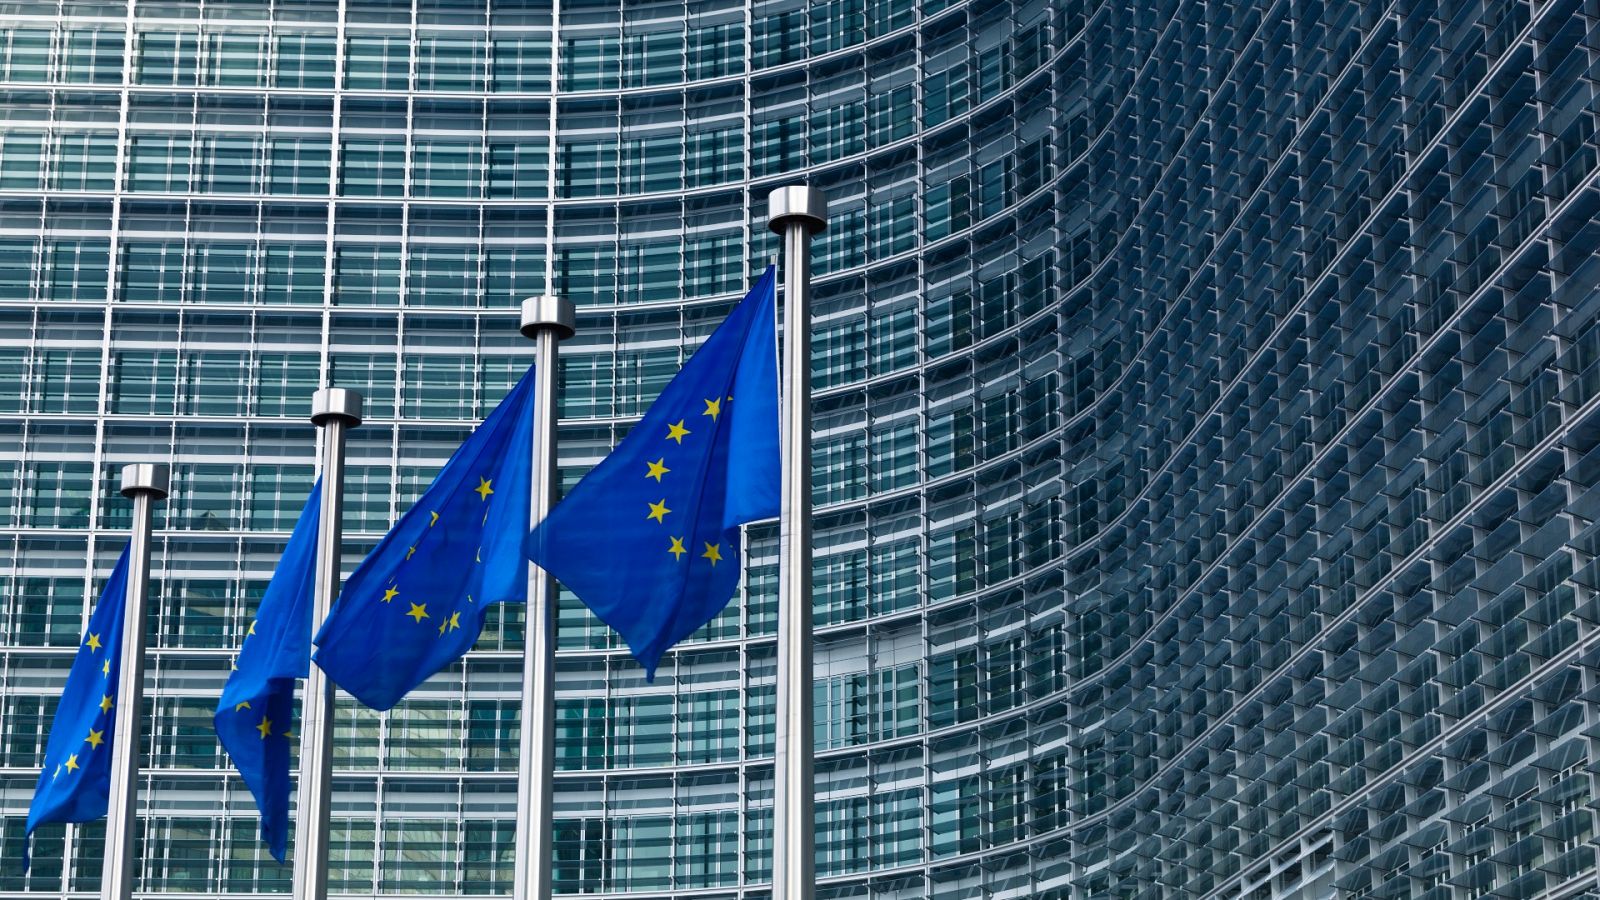 Banderas de la Unión Europea frente al edificio de la Comisión Europea en Bruselas, Bélgica